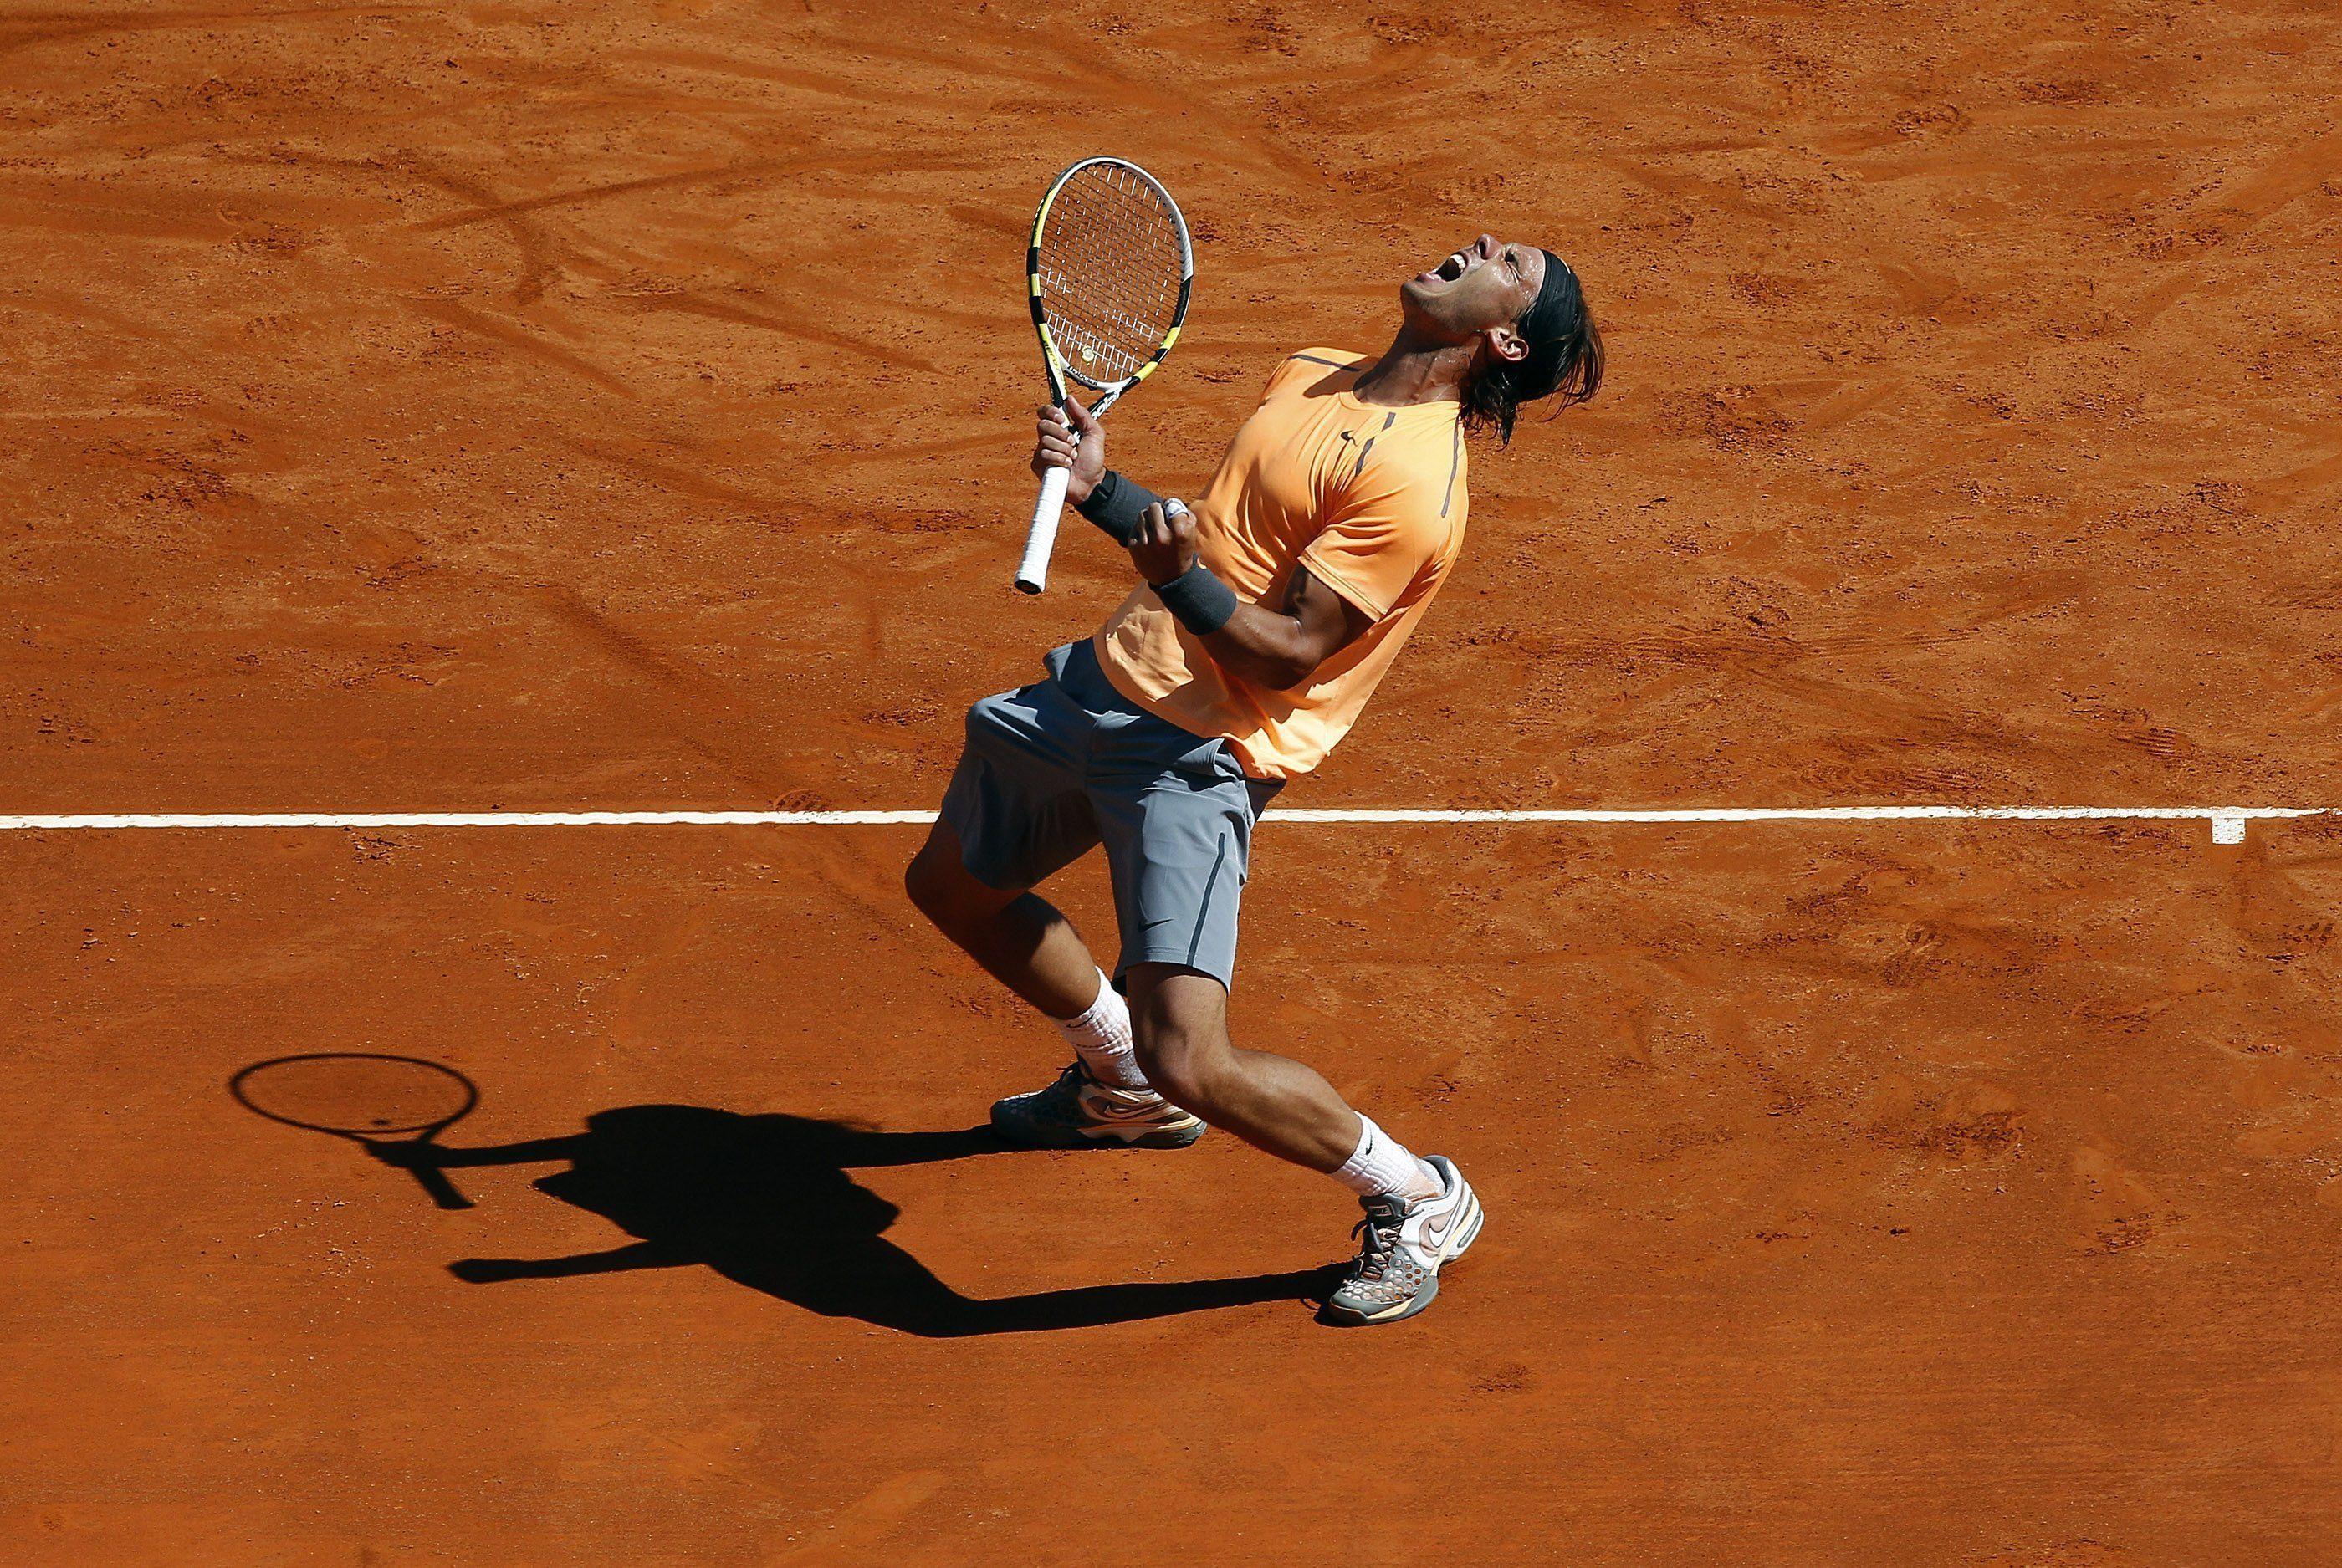 Rafael Nadal Wallpaper, Picture, Image